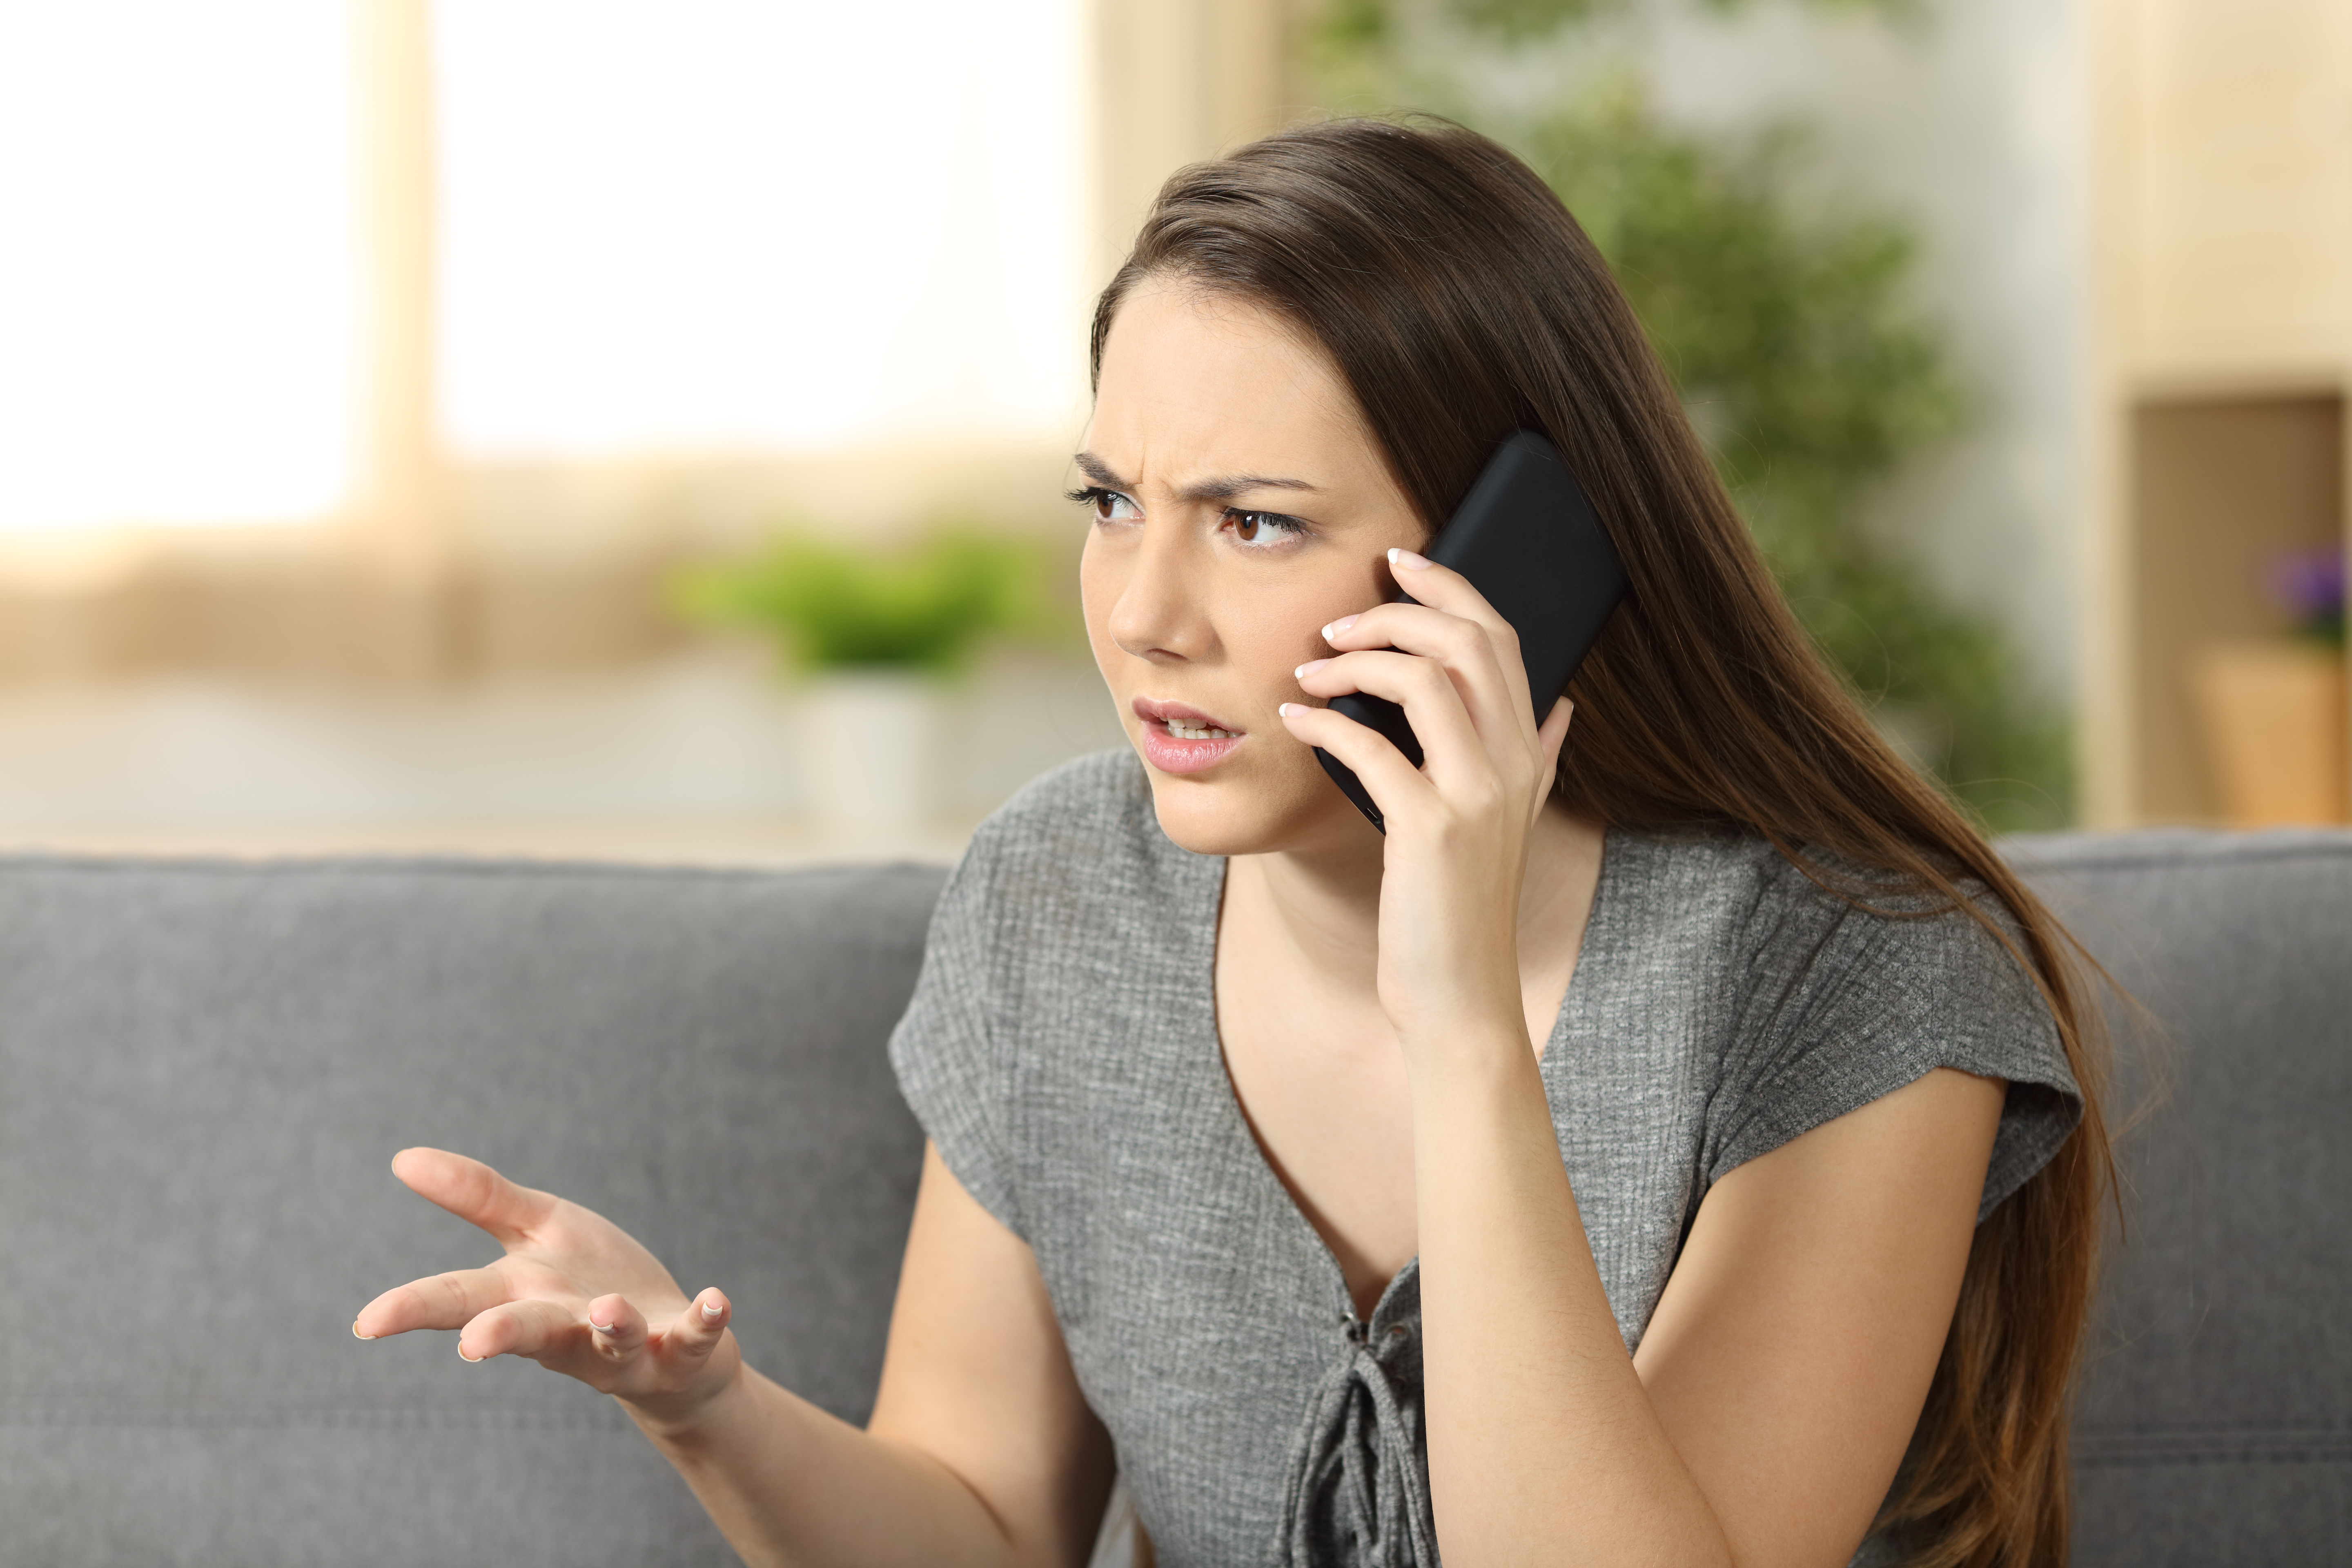 Eine Frau im Telefongespräch | Quelle: Shutterstock